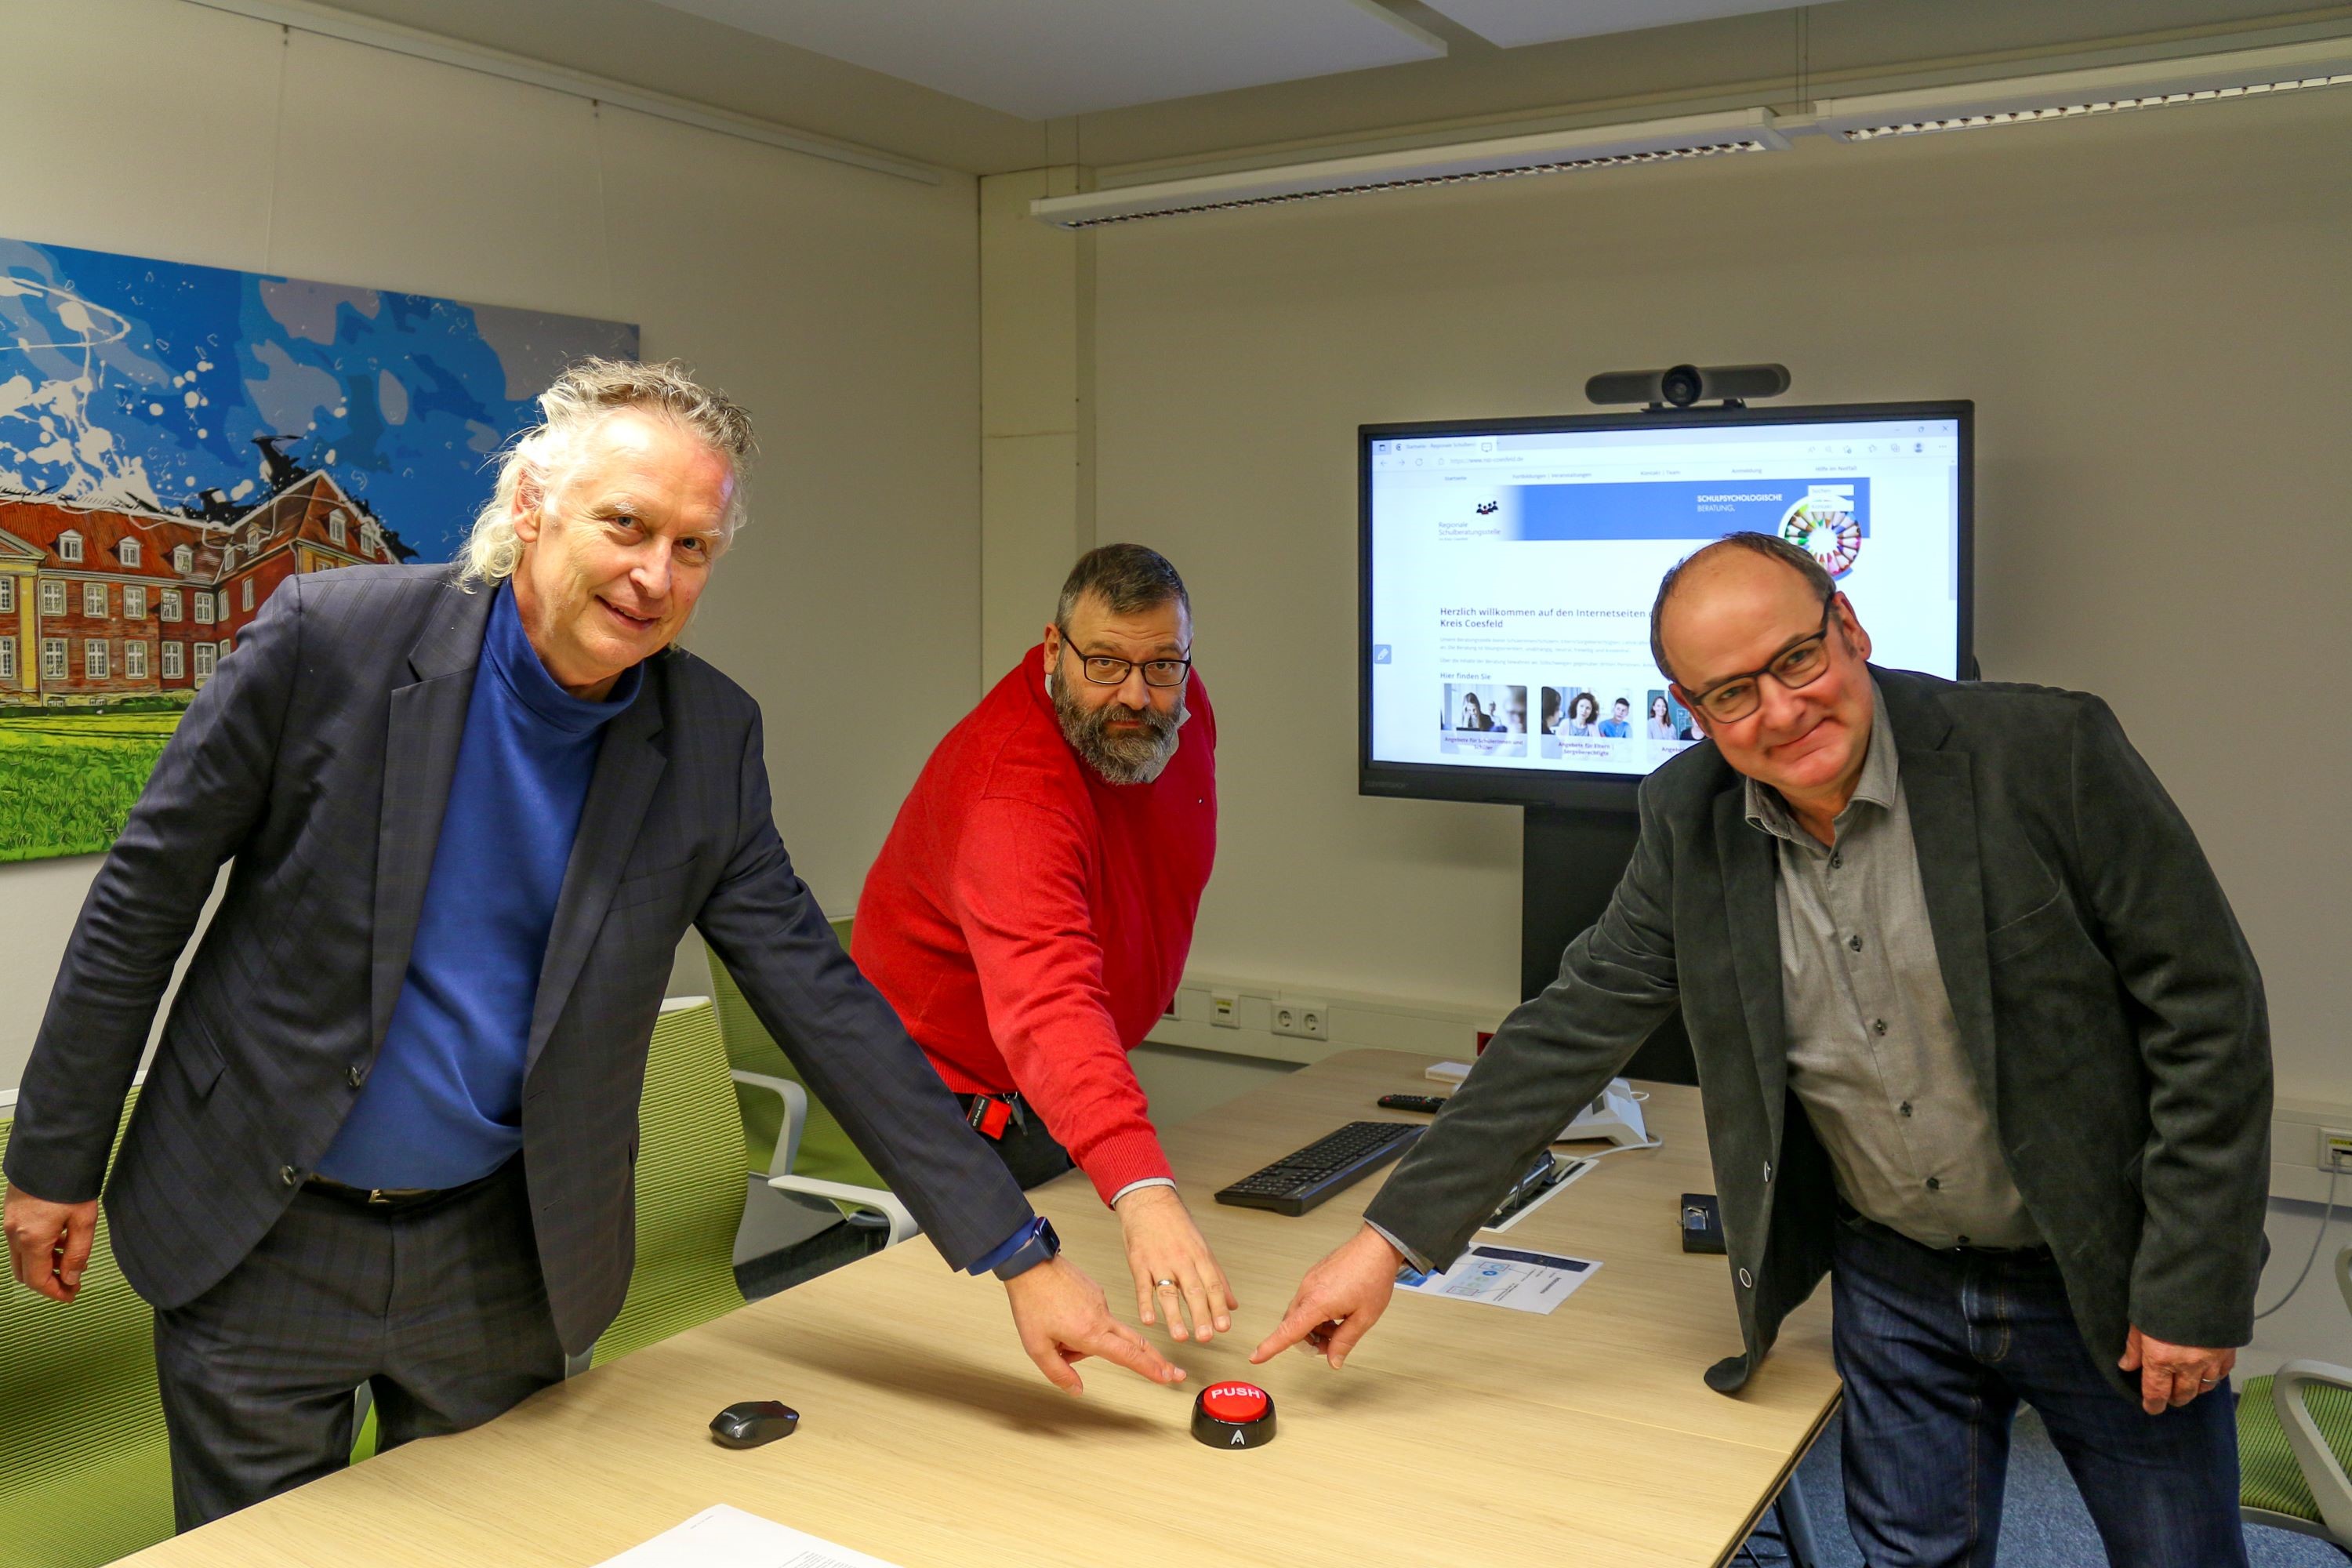 Dezernent Detlef Schütt, IT-Mitarbeiter Tobias Musholt und RSB-Leiter Dirk Zeuner (v.l.n.r.) drücken den symbolischen Startknopf (Bildquelle: Kreis Coesfeld).